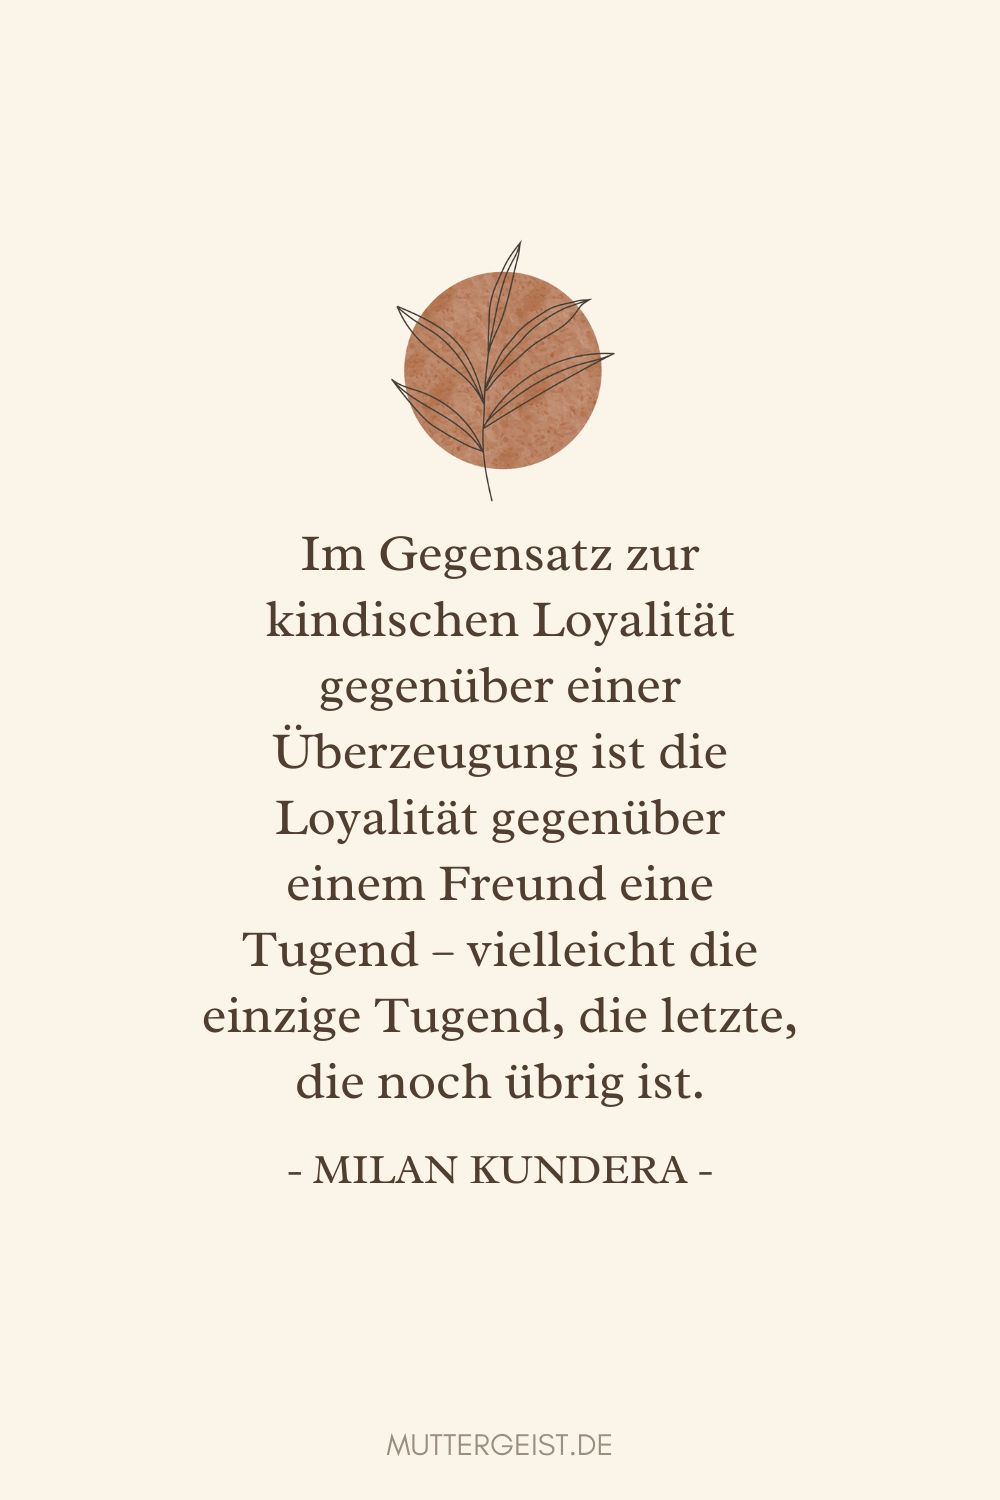 Zitat über Loyalität gegenüber einem Freund von Milan Kundera